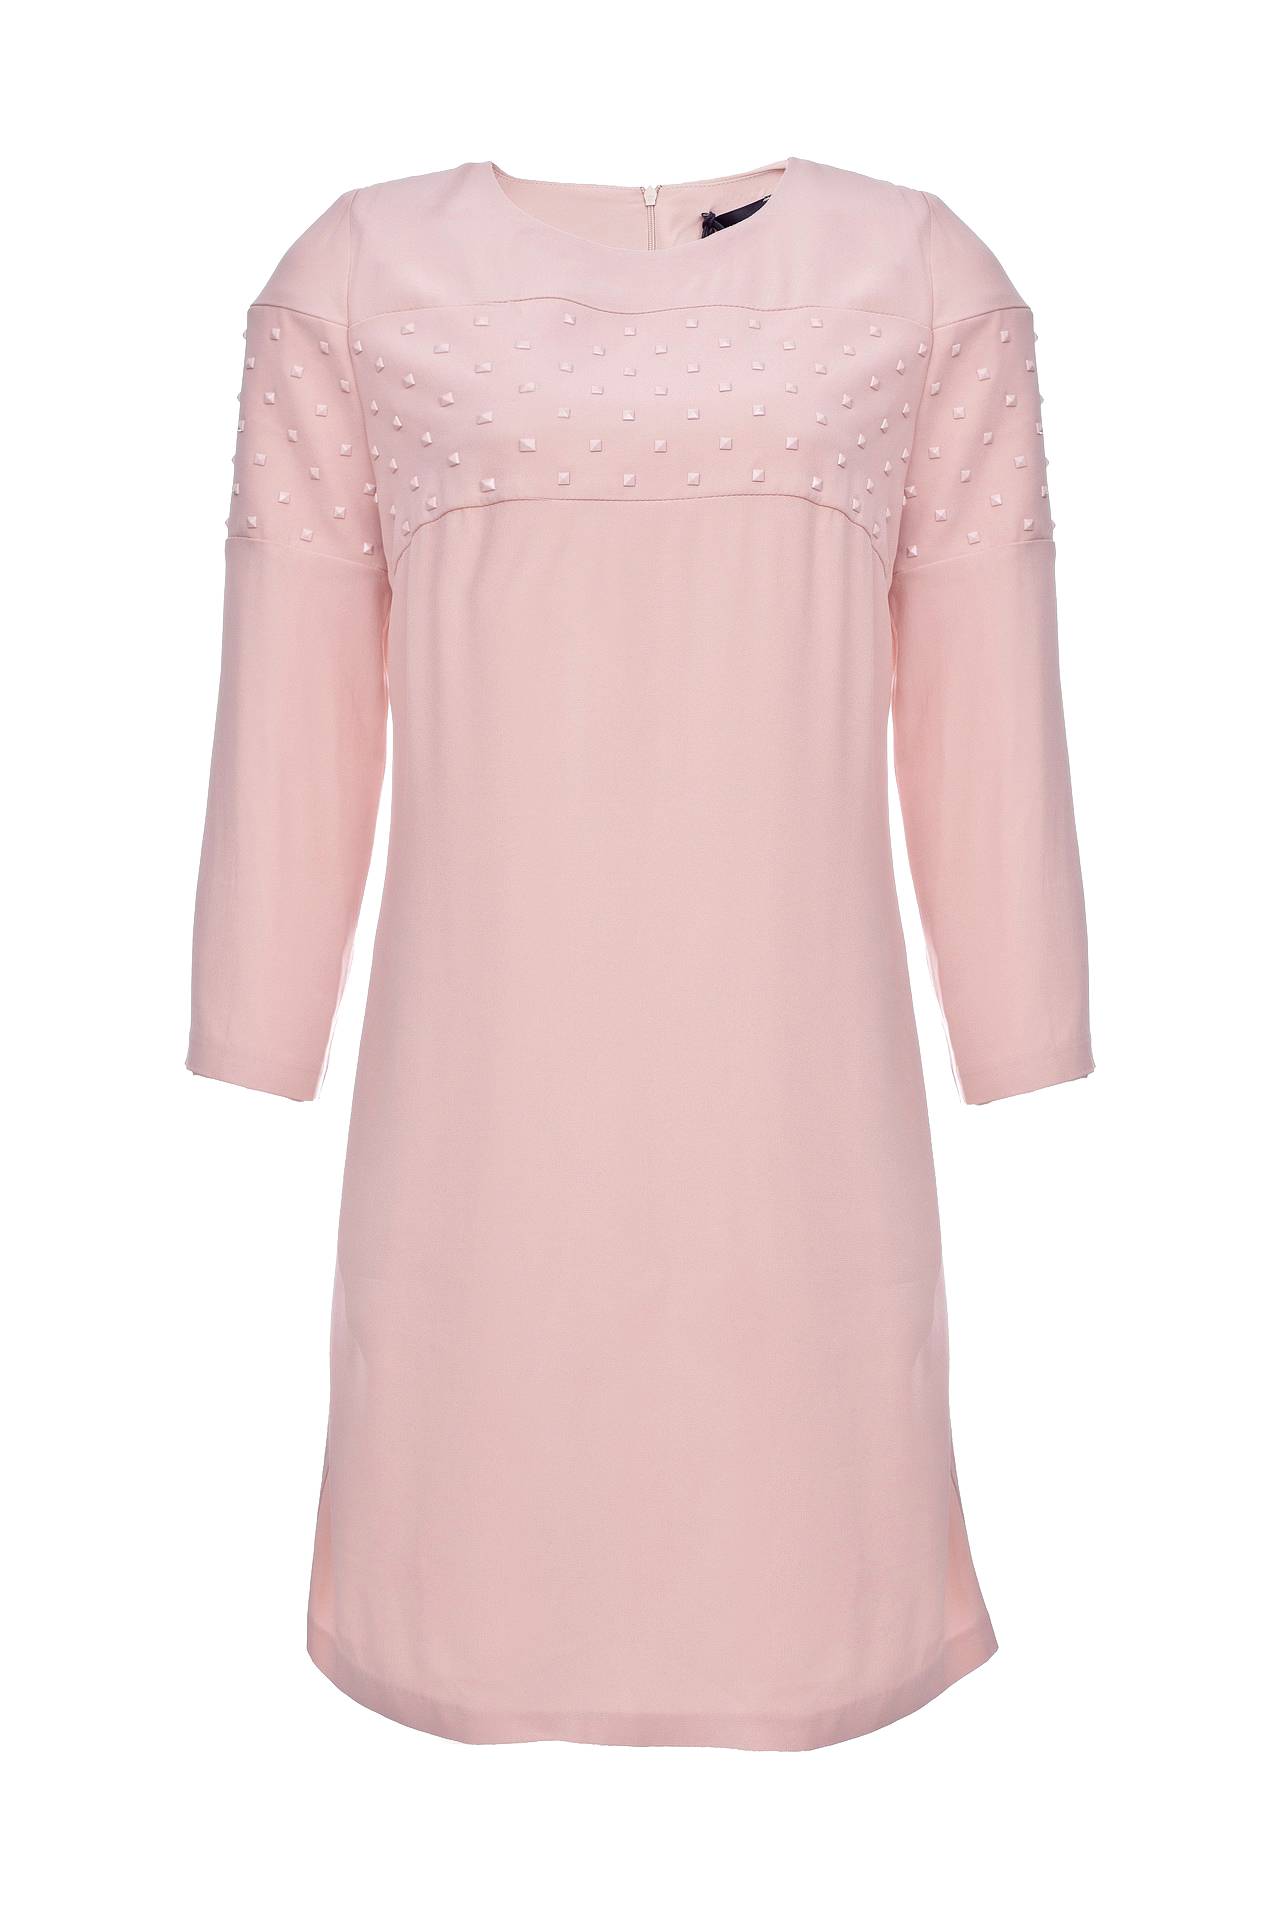 Одежда женская Платье ATOS LOMBARDINI (P6PP03029/16.2). Купить за 12200 руб.